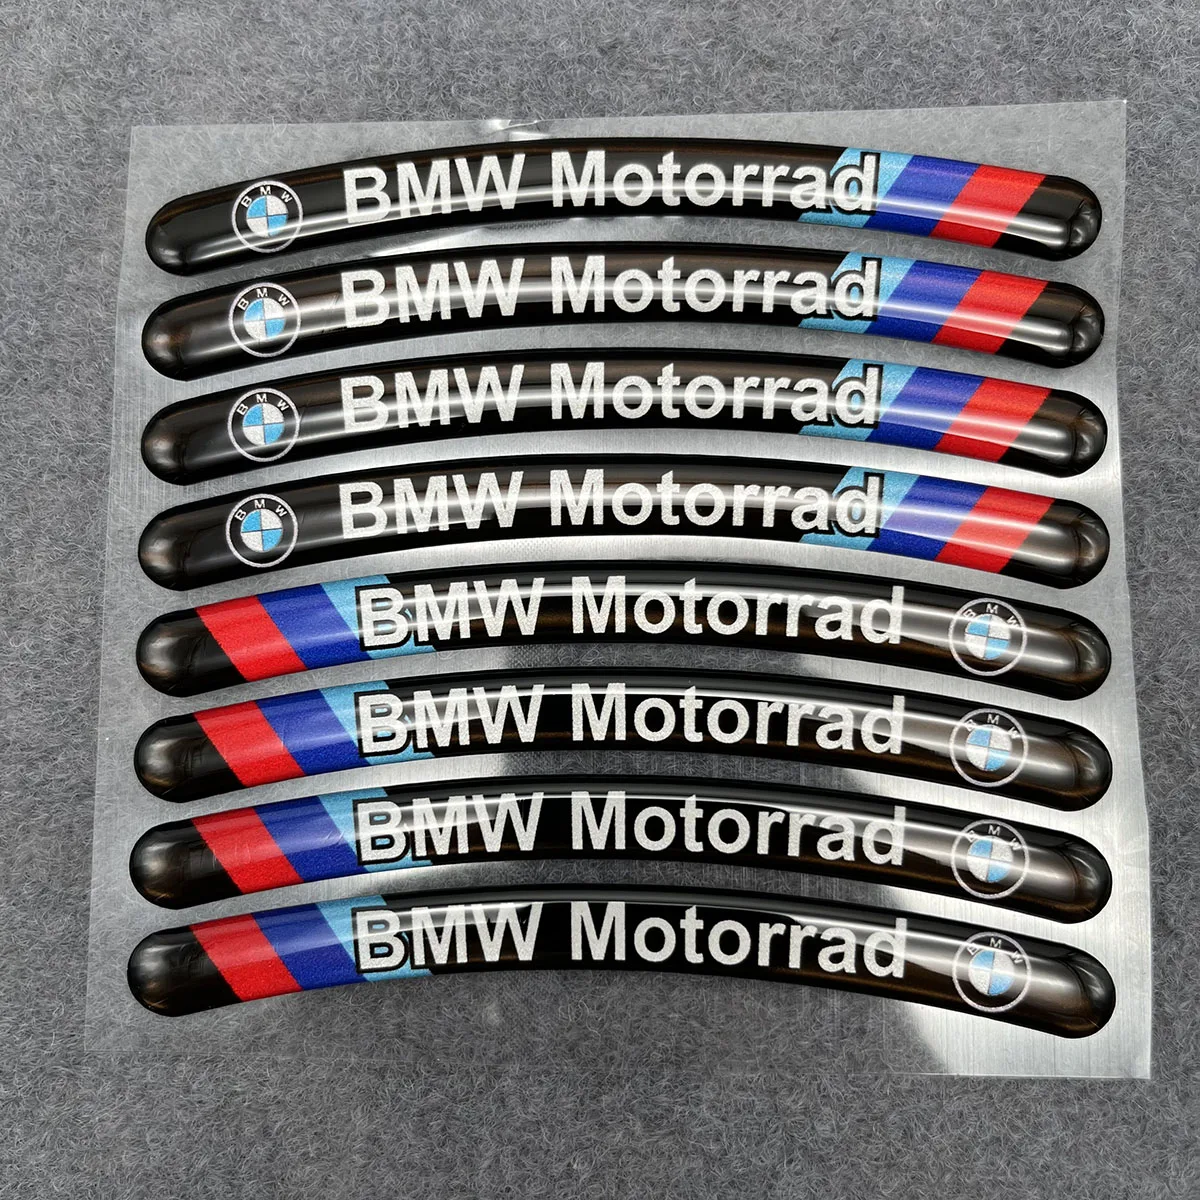 

Motorcycle 3D Gel Reflective Rim Stripe Wheel Decals Tape Stickers For BMW R1250 G310 F750GS F900 S1000RR S1000R S1000XR